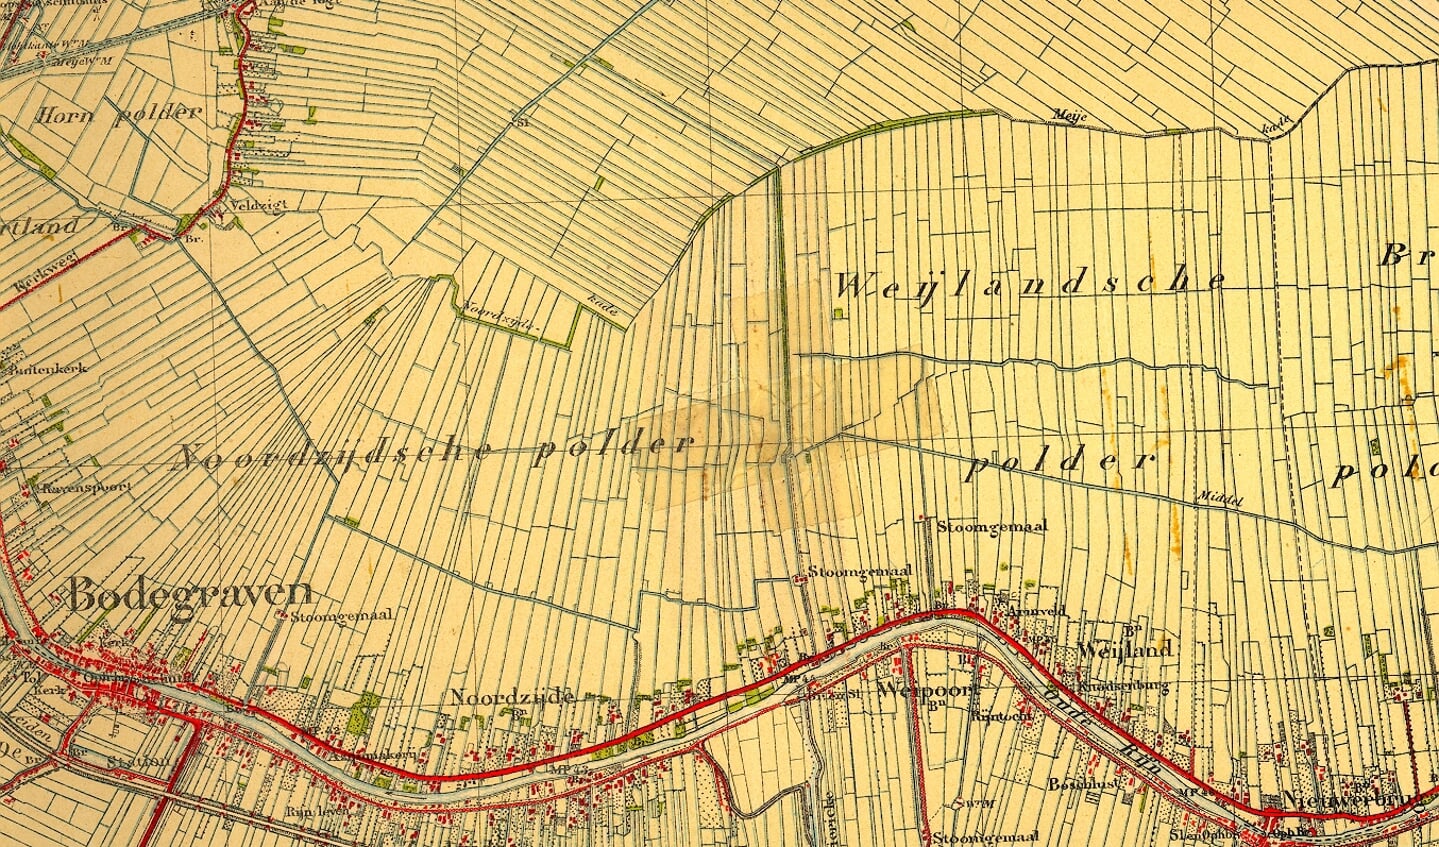 Het slotenpatroon ten noorden van Bodegraven in 1887.